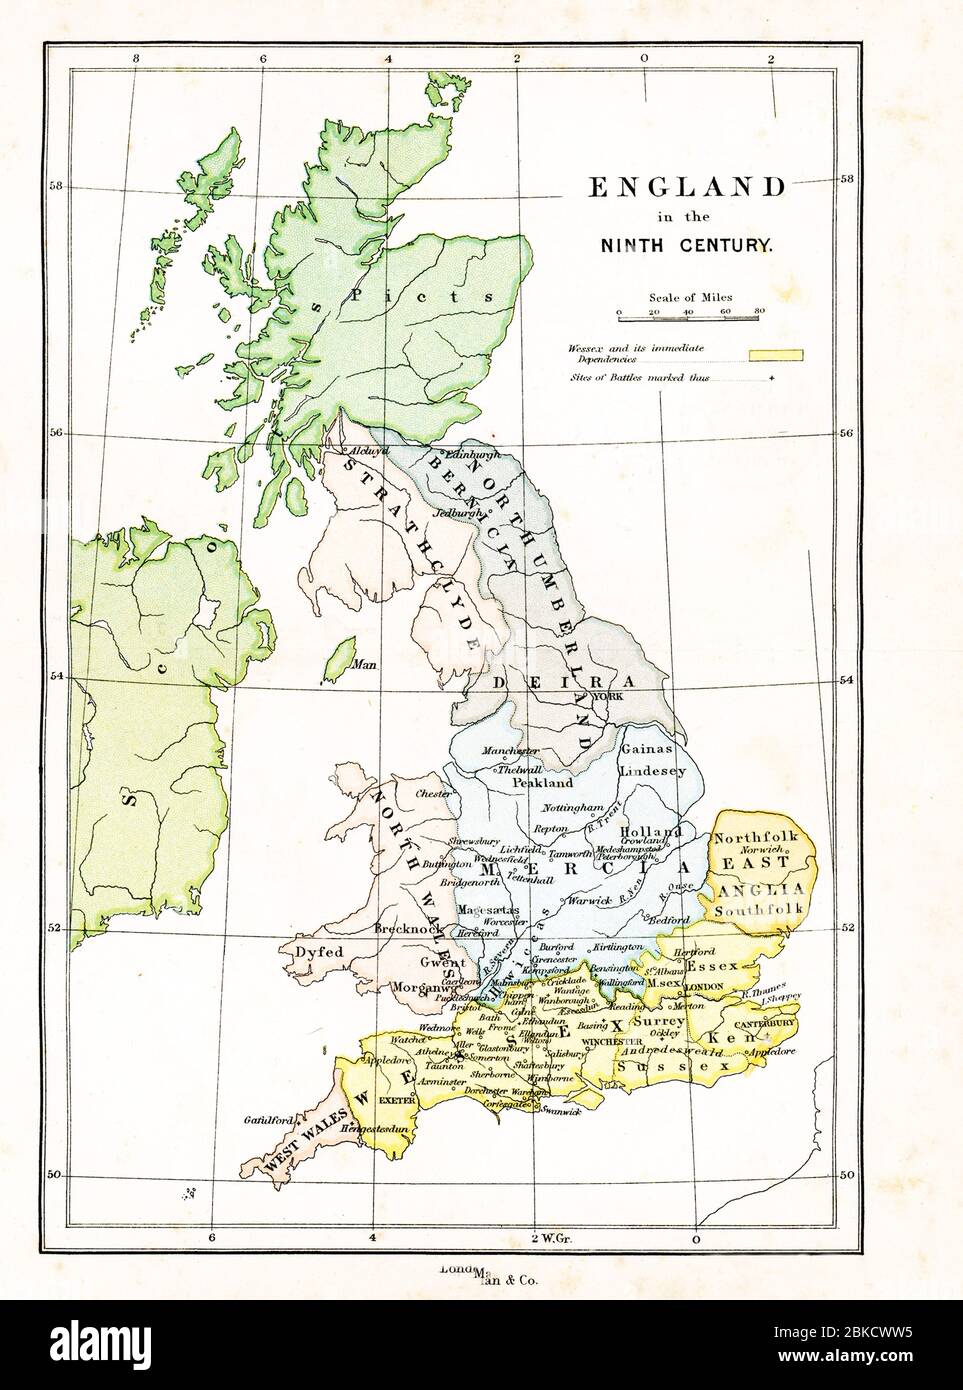 Cette carte montre la Grande-Bretagne au IXe siècle A.D. la légende a le jaune comme représentant Wessex et ses dépendances immédiates. Un signe plus marque le site des batailles. Banque D'Images